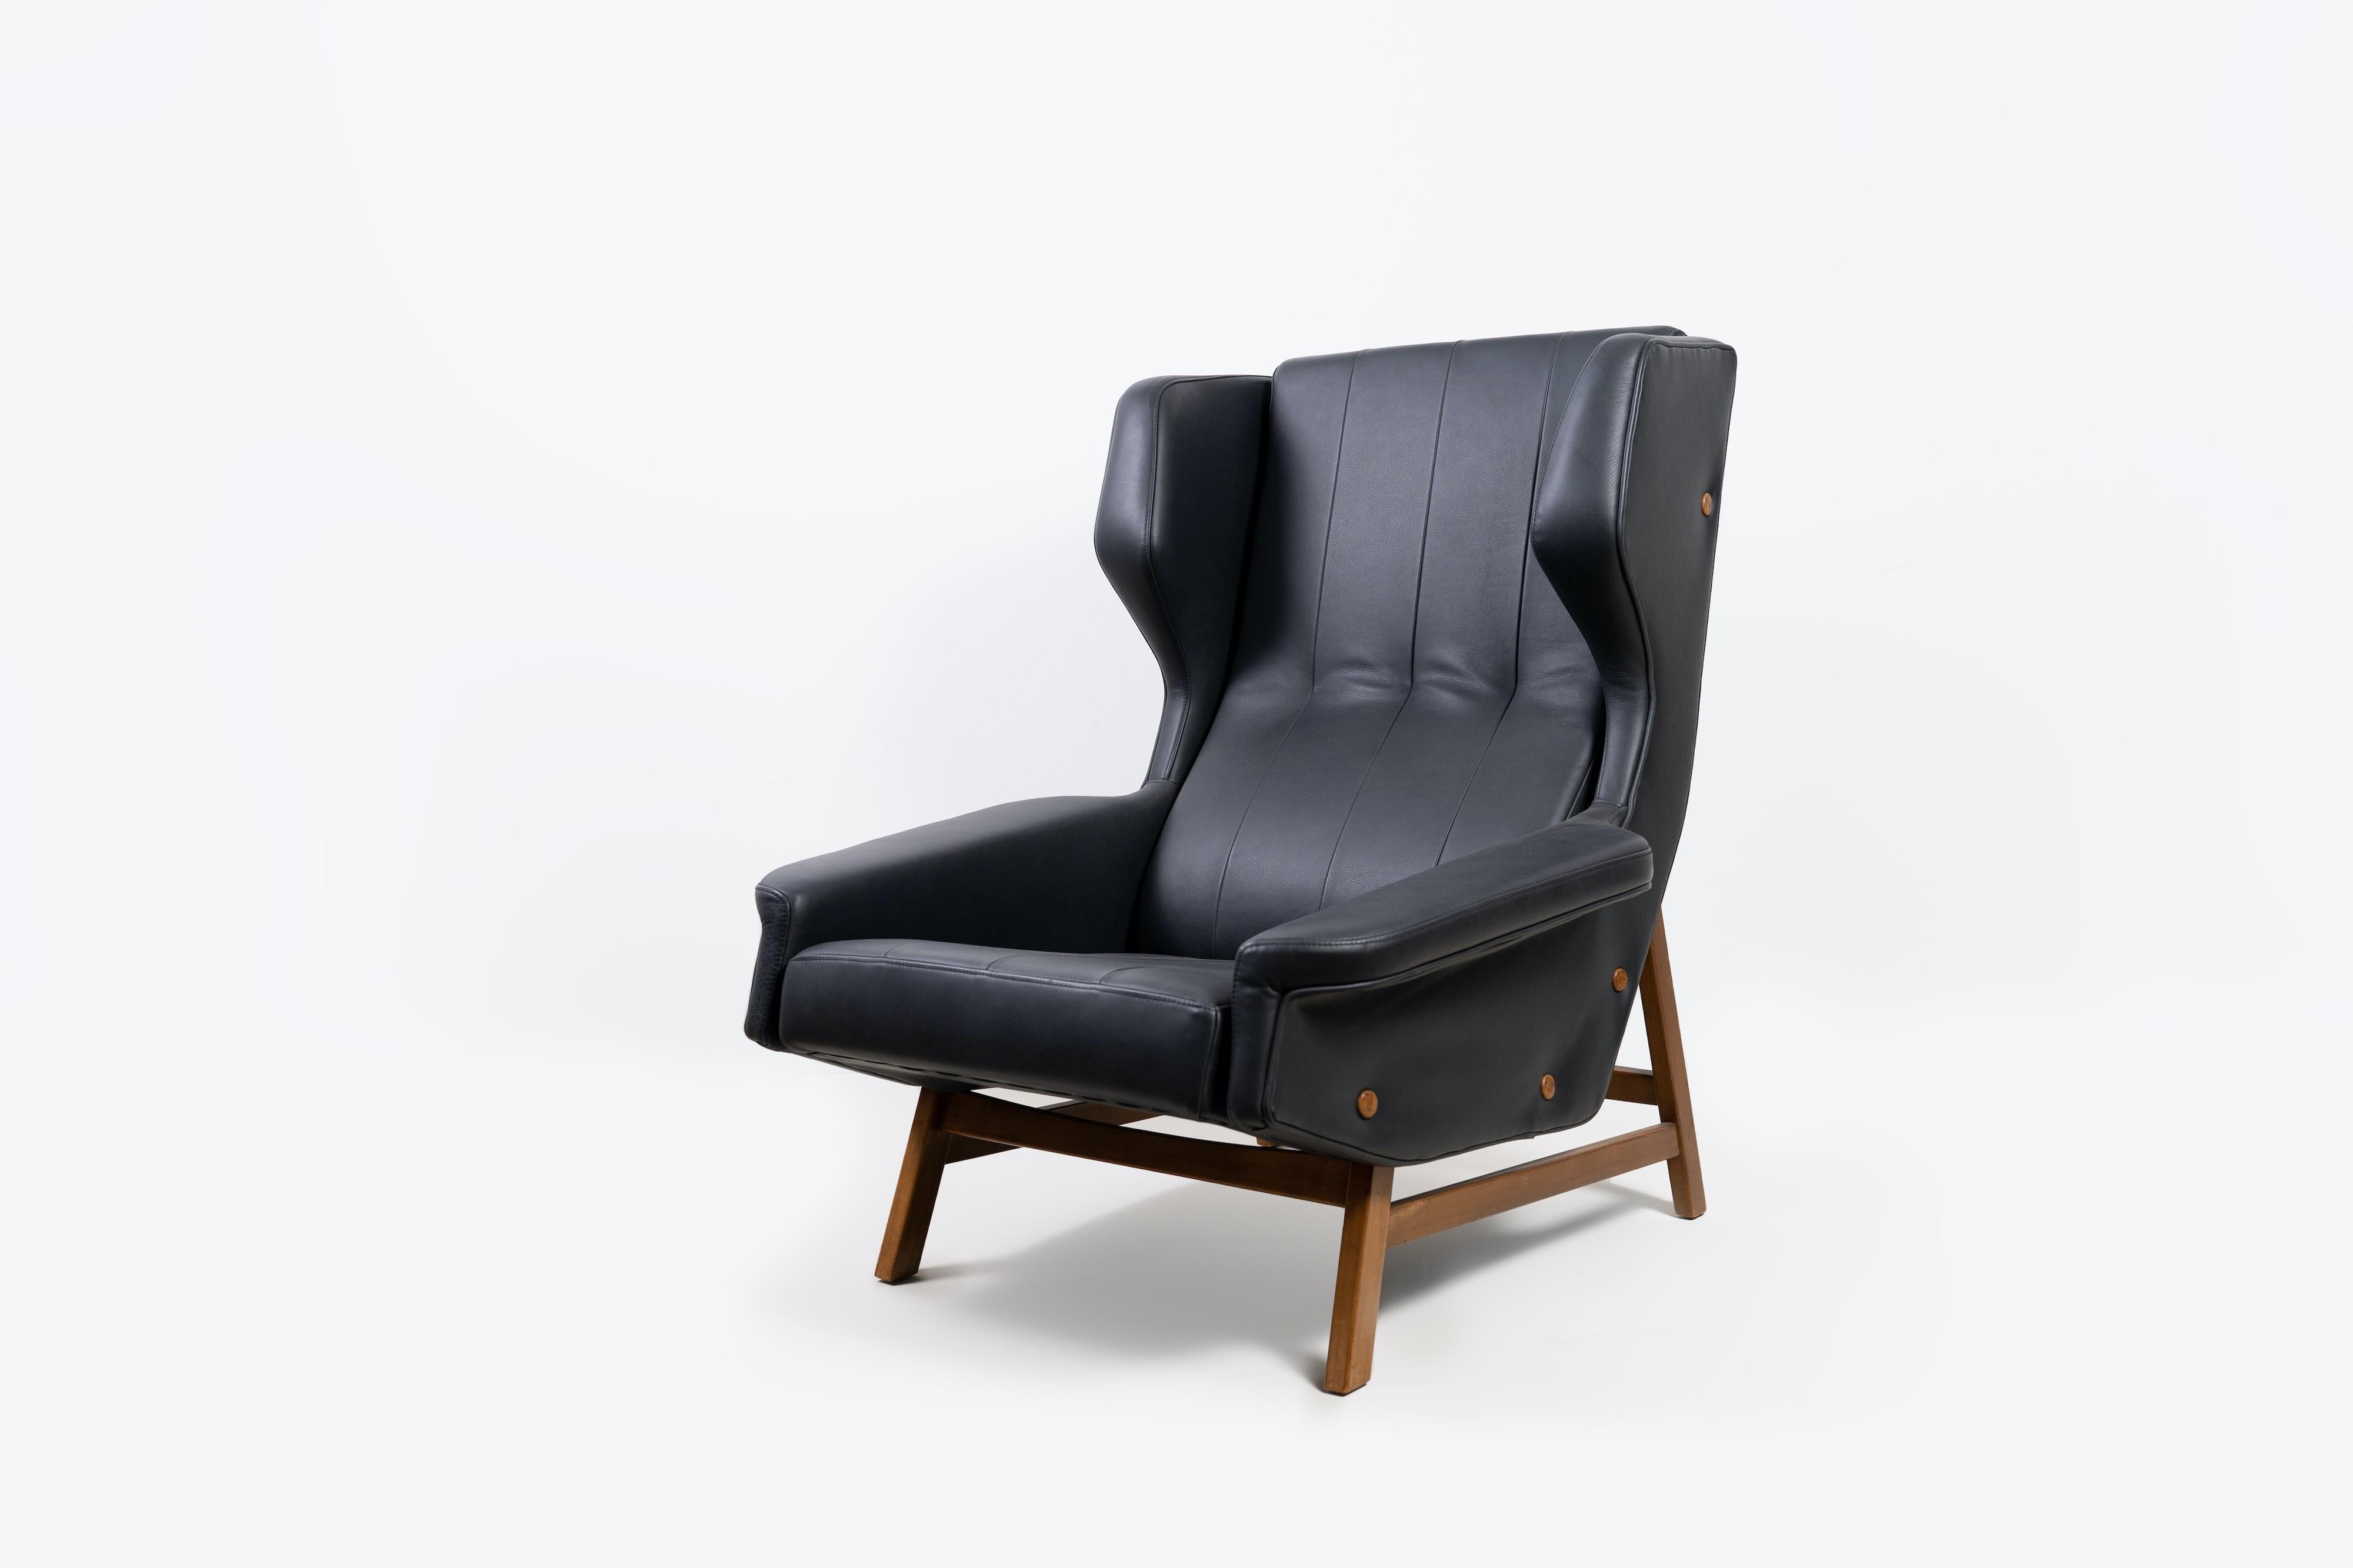 Der 877 Wingback Sessel ist ein absoluter Klassiker. Dieser ikonische Sessel wurde 1959 von Gianfranco Frattini entworfen und genießt große Anerkennung in der Designwelt. Der Stuhl bietet sowohl die höchste Qualität der Konstruktion und der